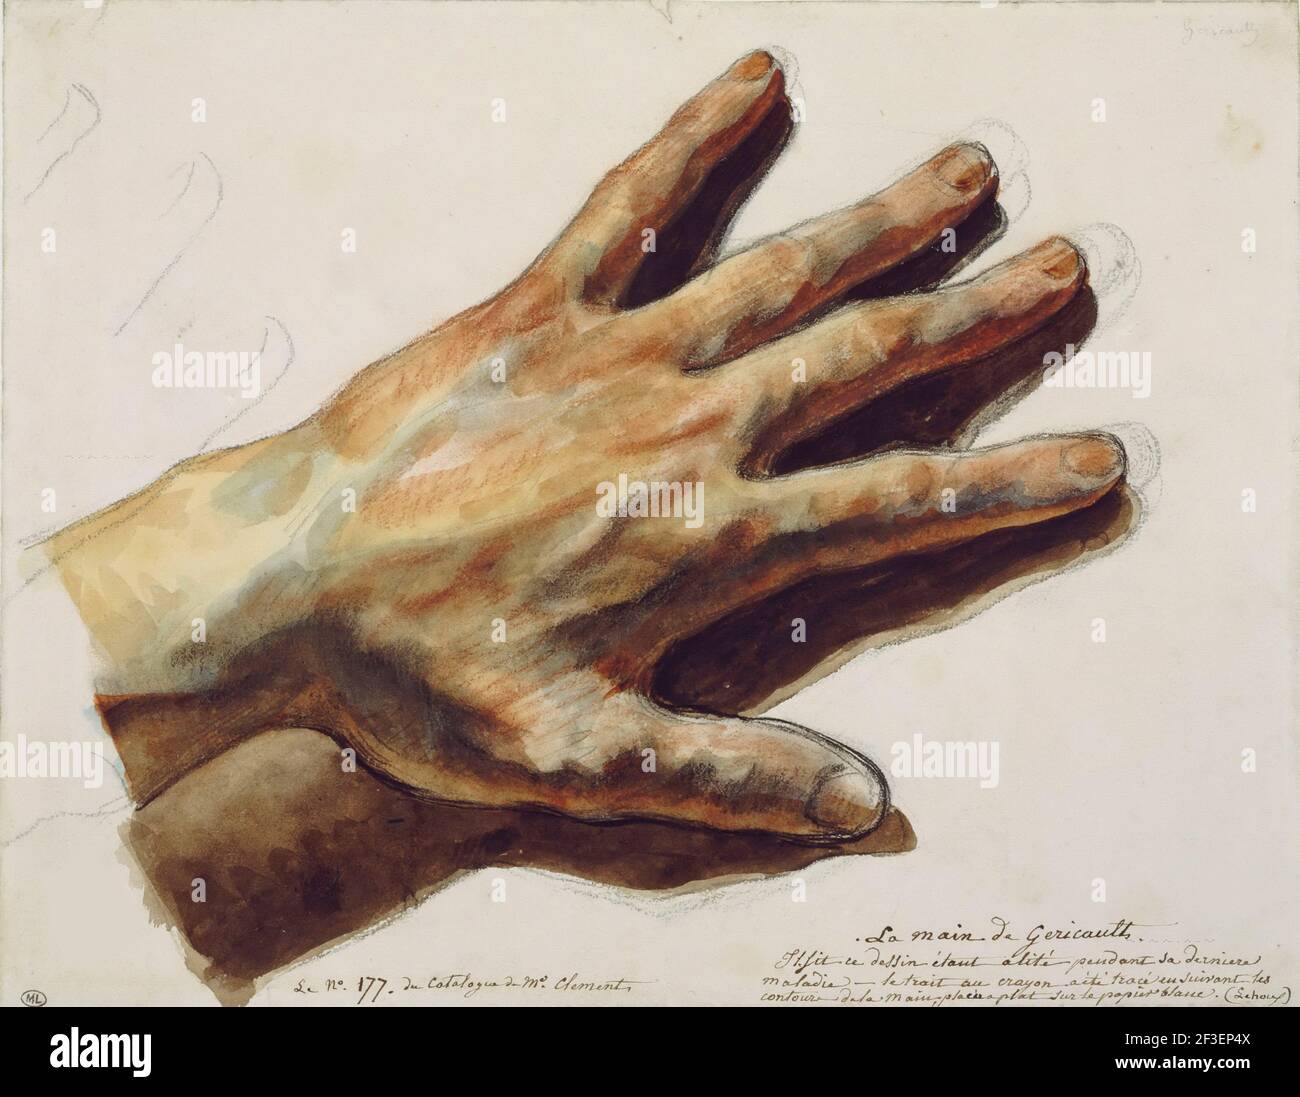 La main gauche de TH&#xe9;odore G&#xe9;ricault. Trouvé dans la collection de Mus&#xe9;e du Louvre, Paris. Banque D'Images